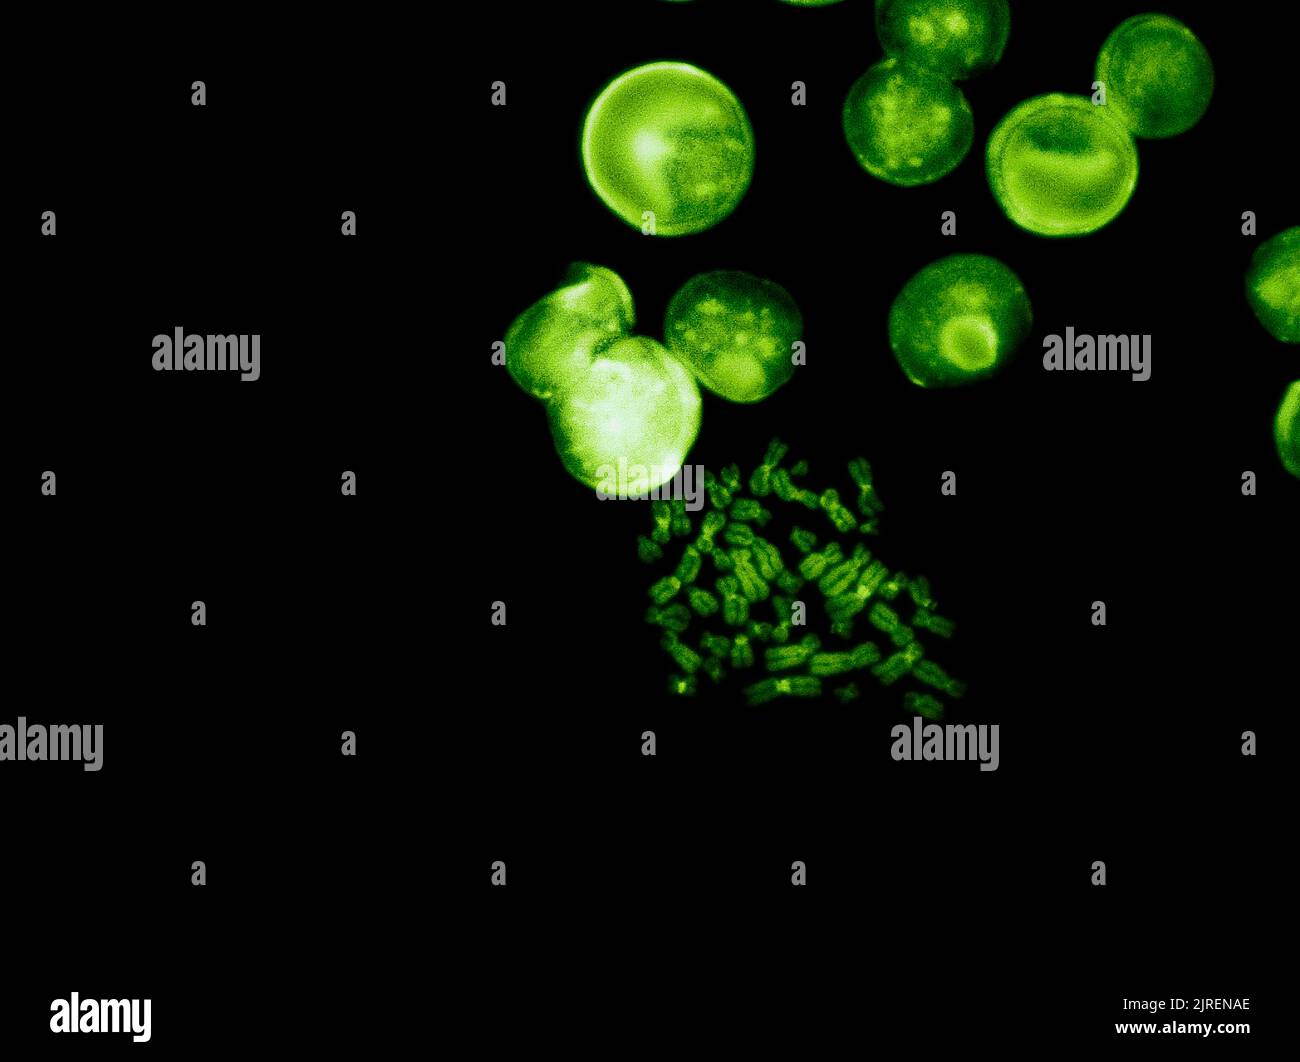 Chromosomes sous microscope à fluorescence, chromosomes humains de couleur verte provenant du sang Banque D'Images